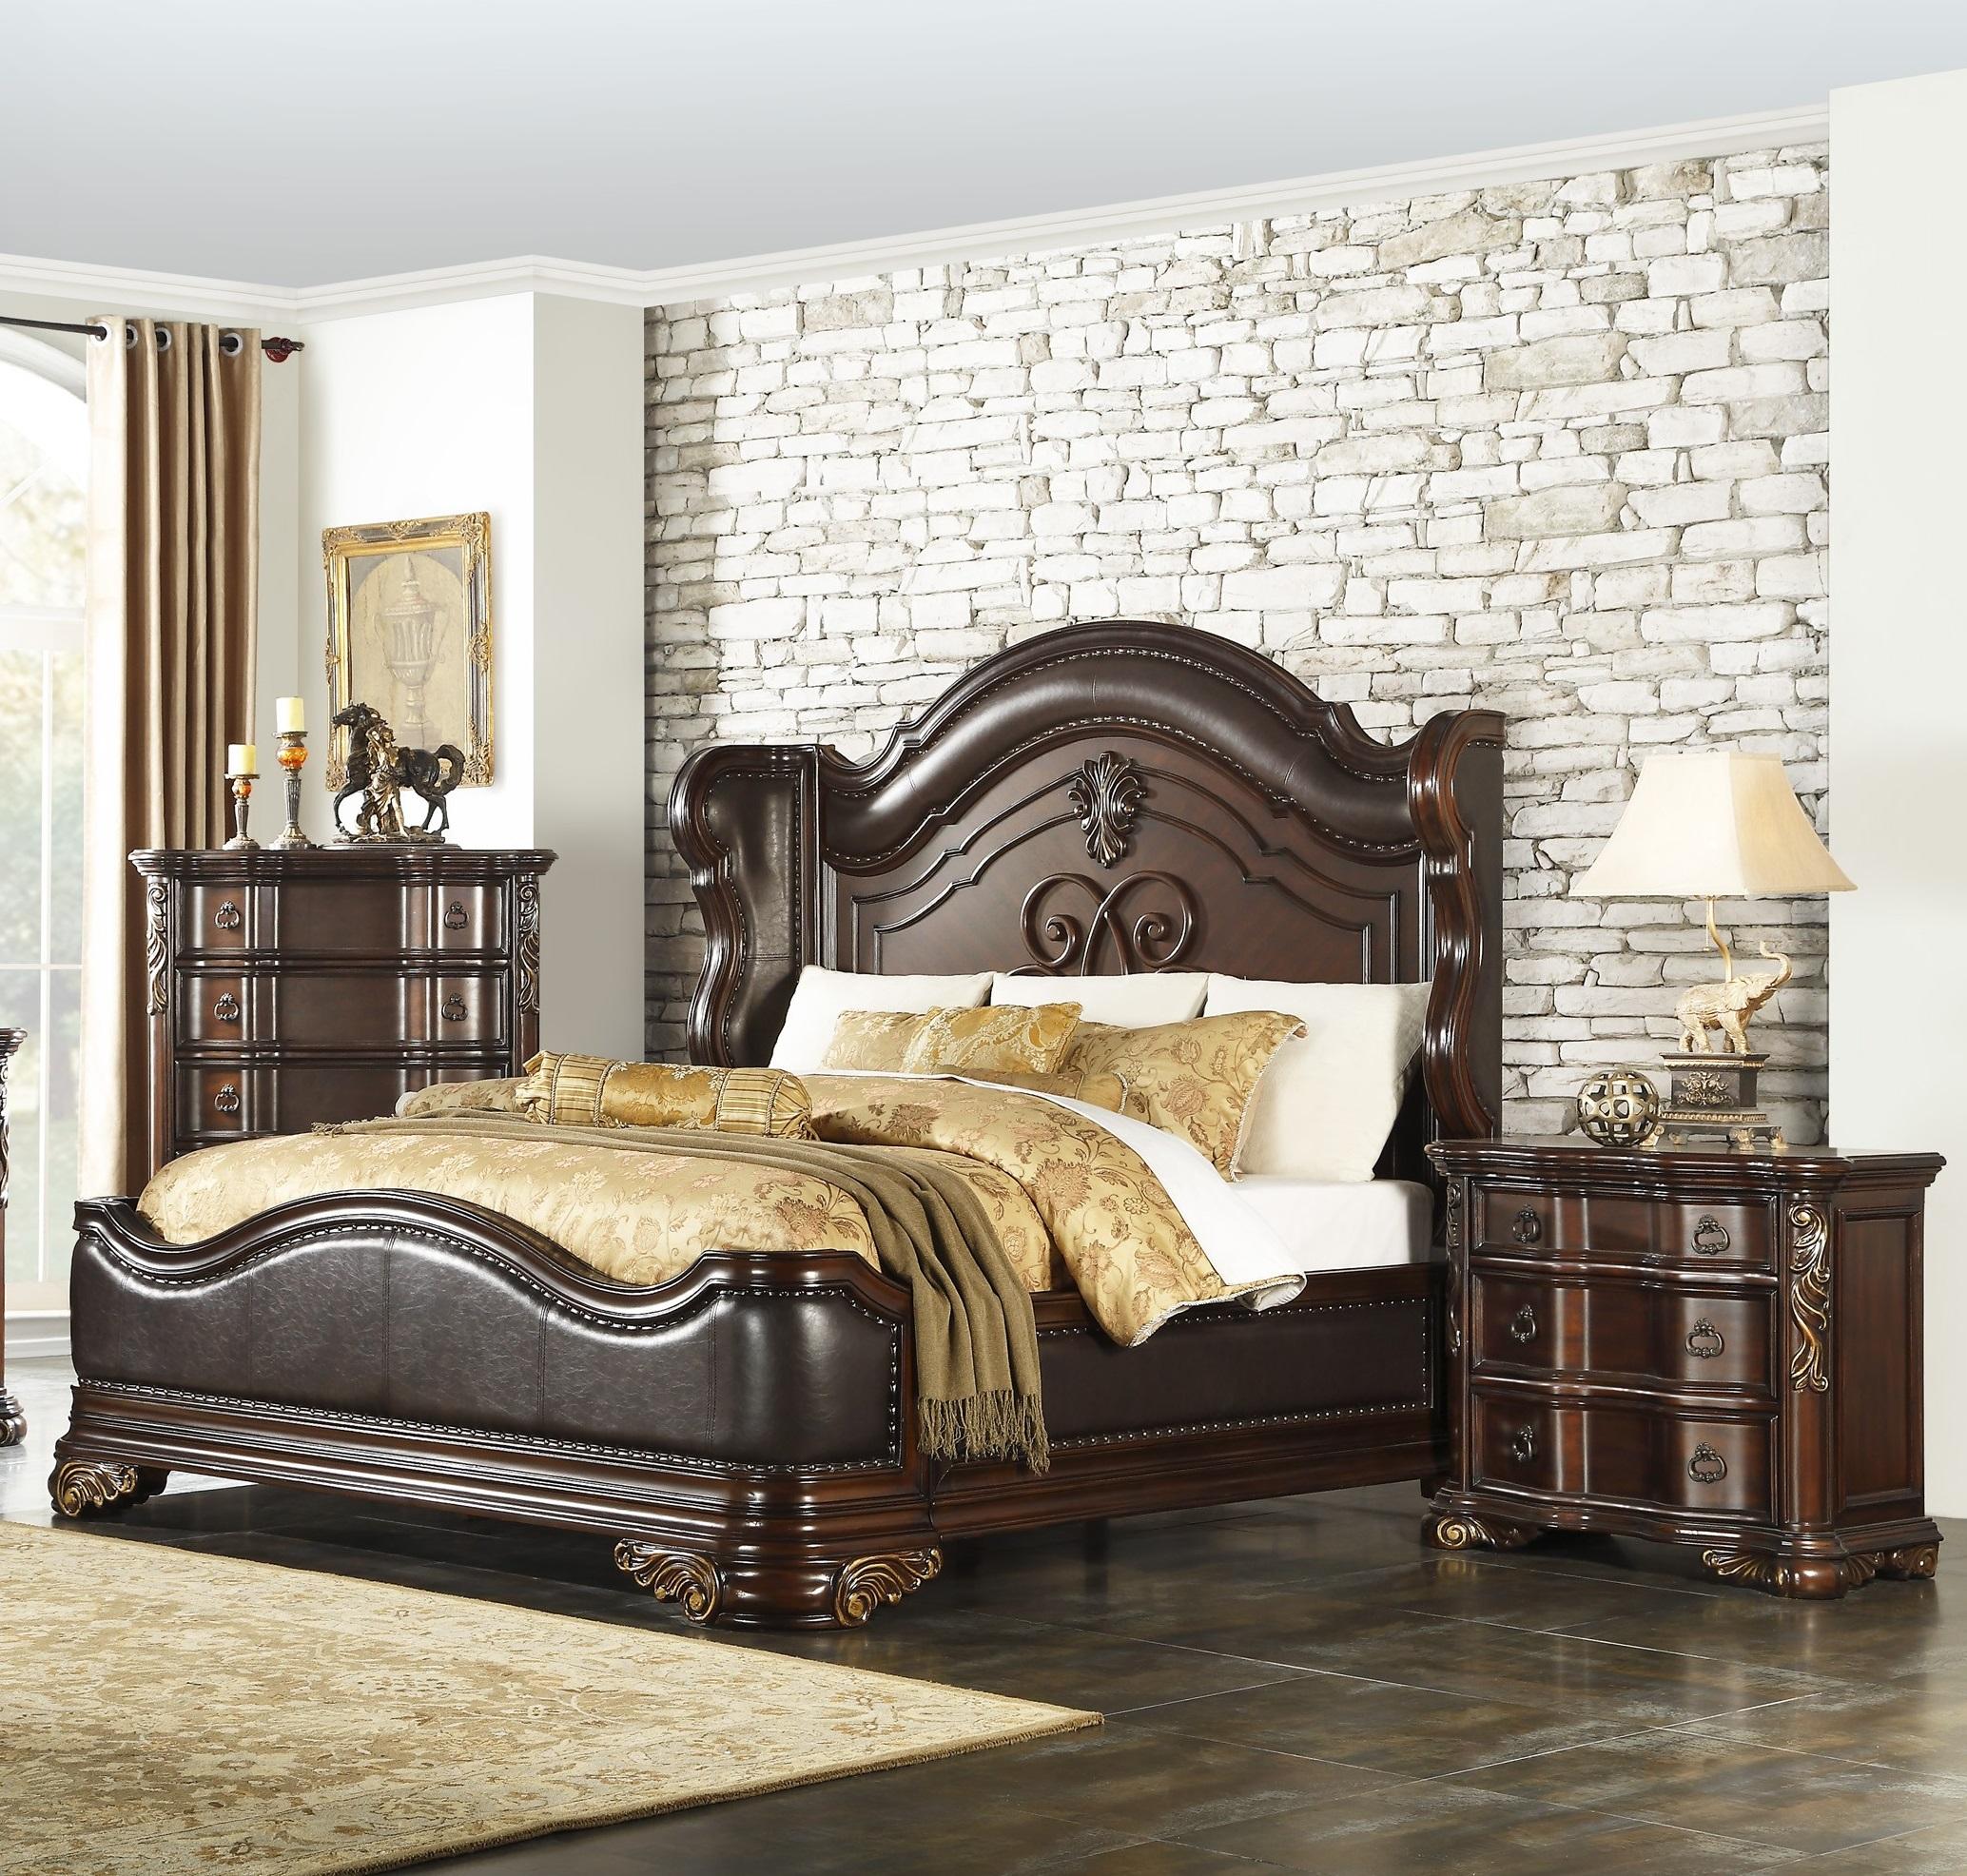 

    
Traditional Cherry Wood King Bedroom Set 3pcs Homelegance 1603K-1EK* Royal Highlands
